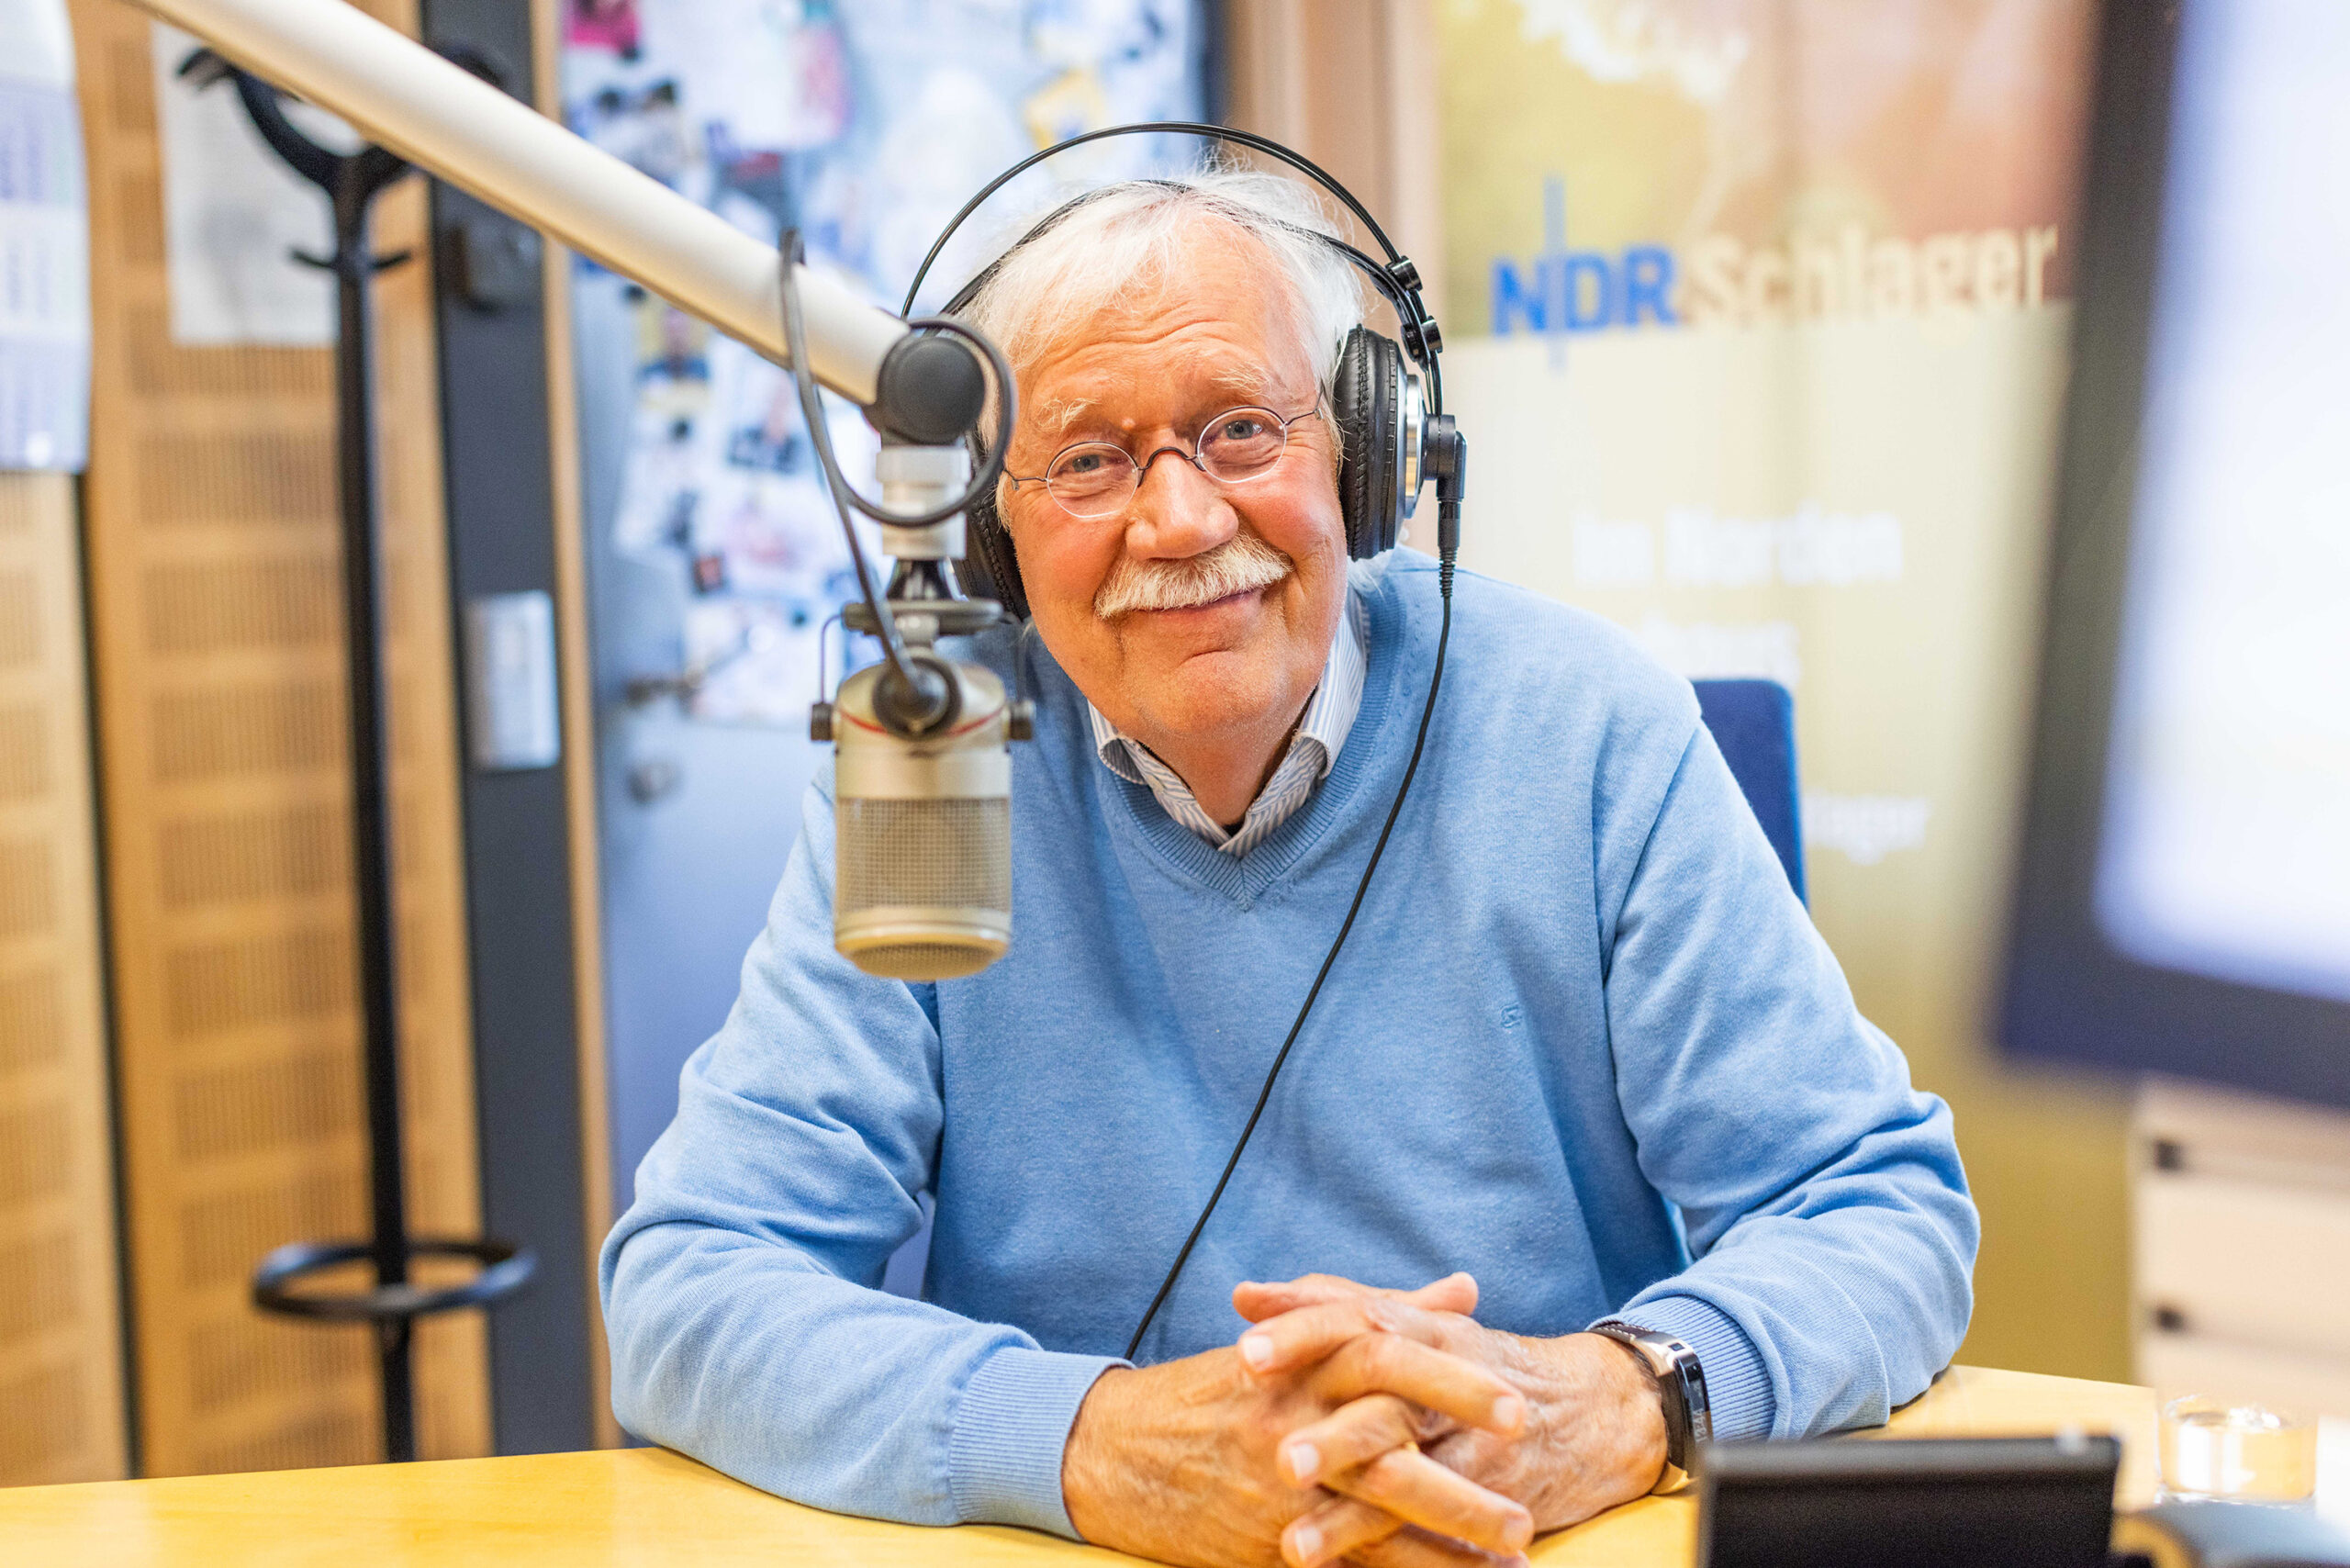 Da ist er wieder: NDR-Legende Carlo von Tiedemann wird bald wieder auf Sendung gehen. (Archivbild)